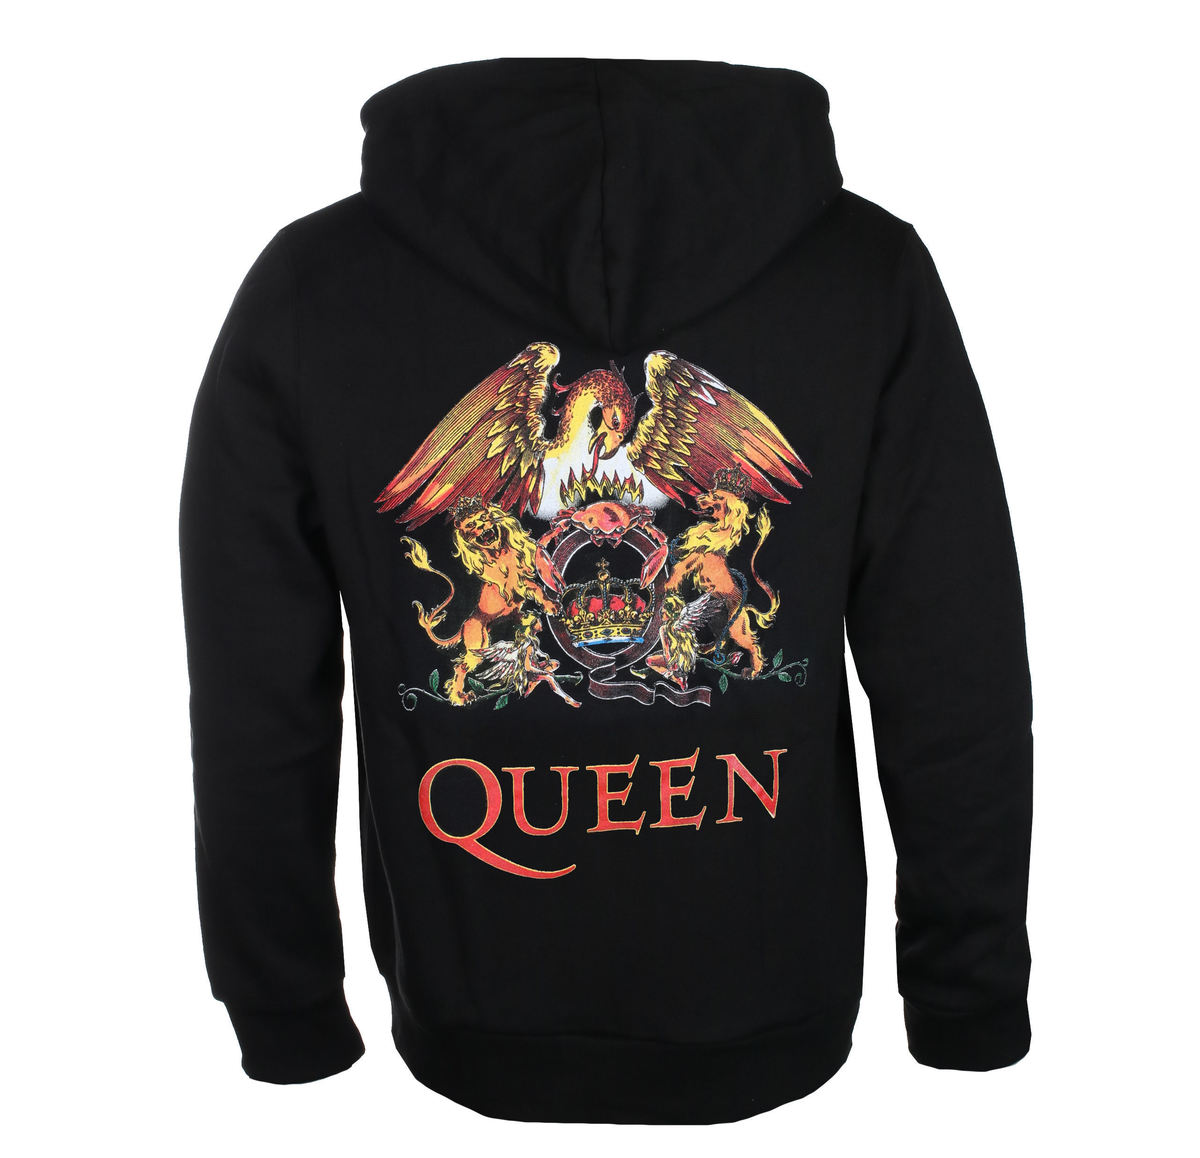 Queen - Zip Hoodie Classic Crest Back Print